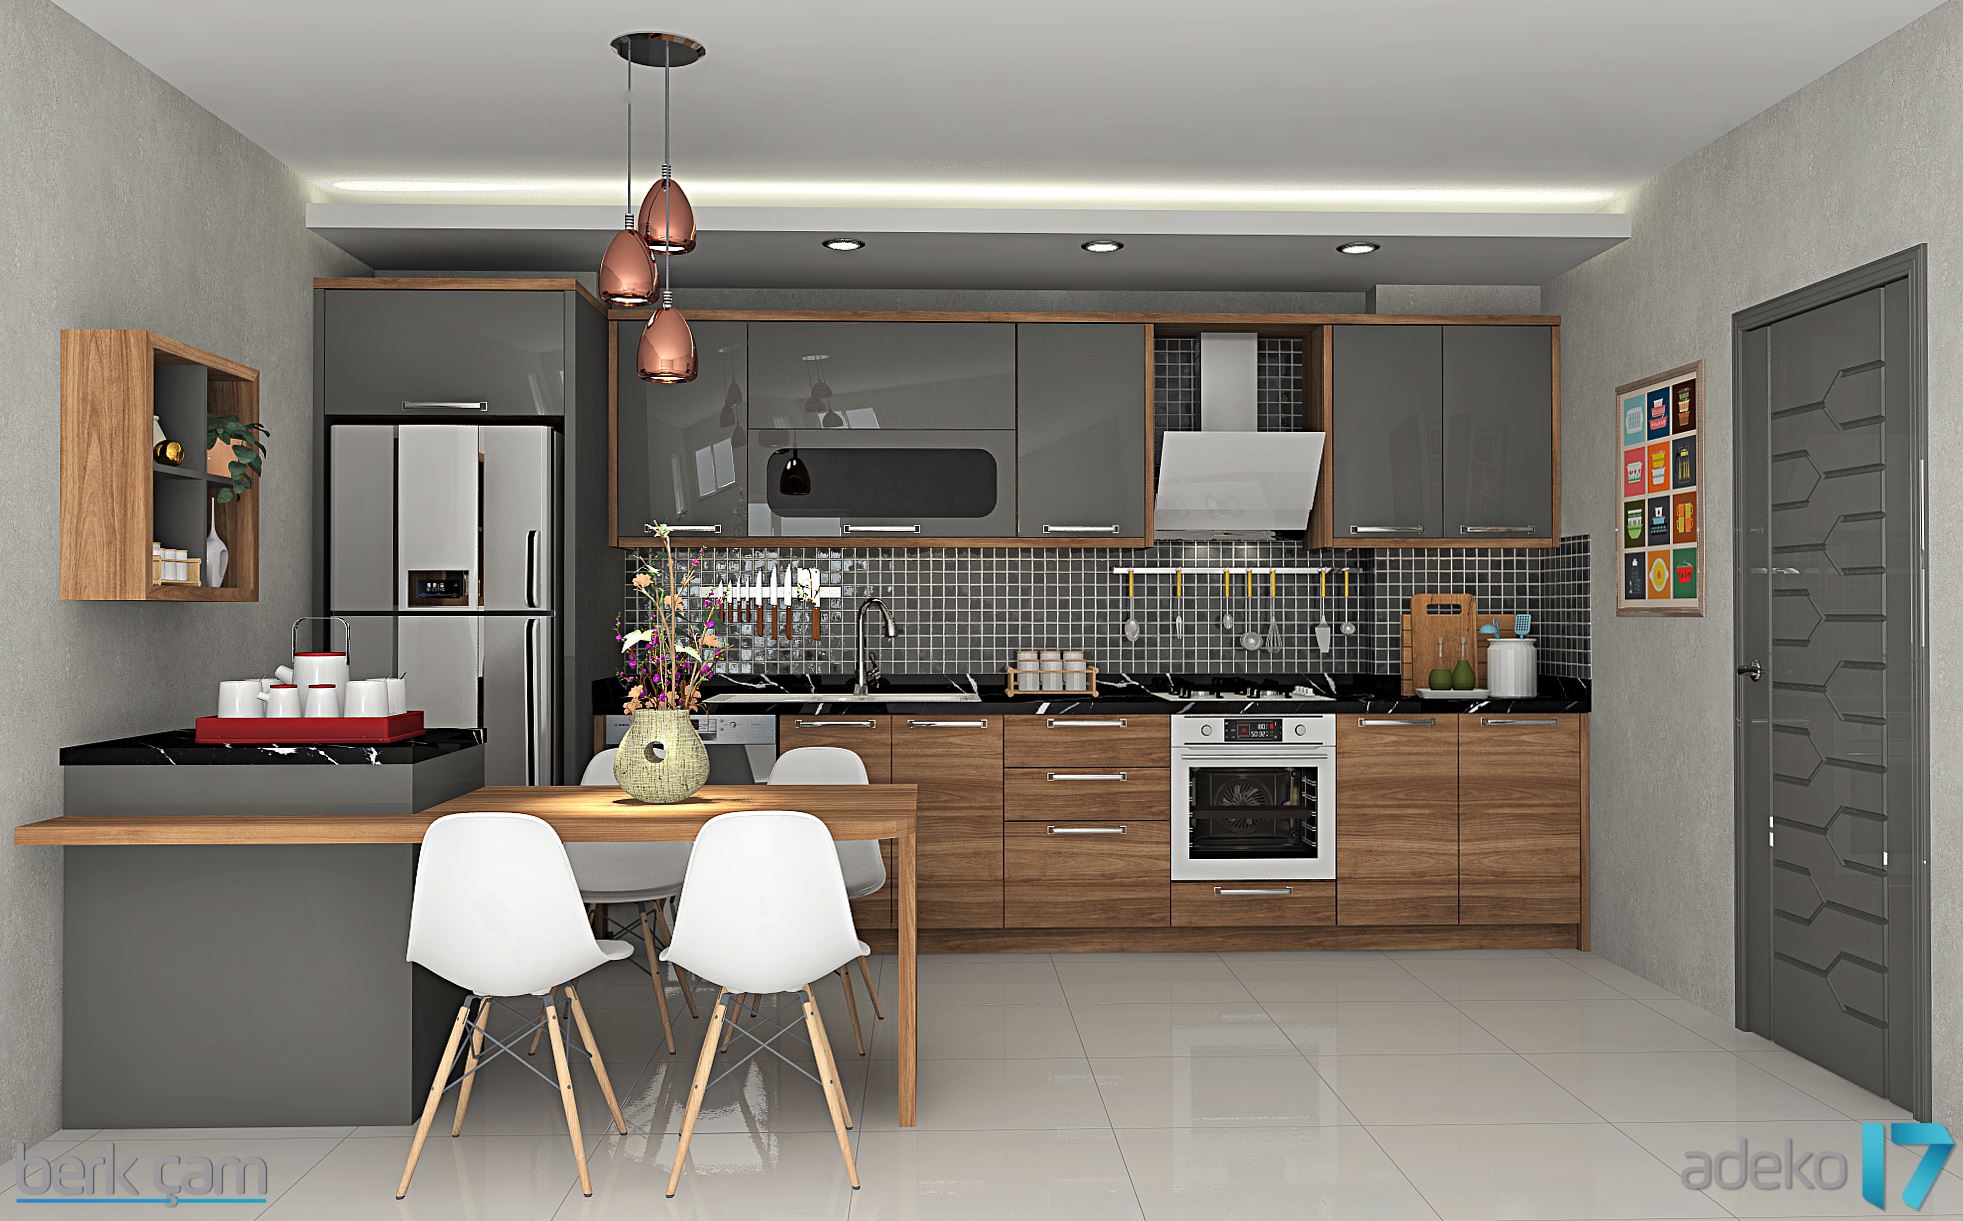 adeko kitchen design 9 free download